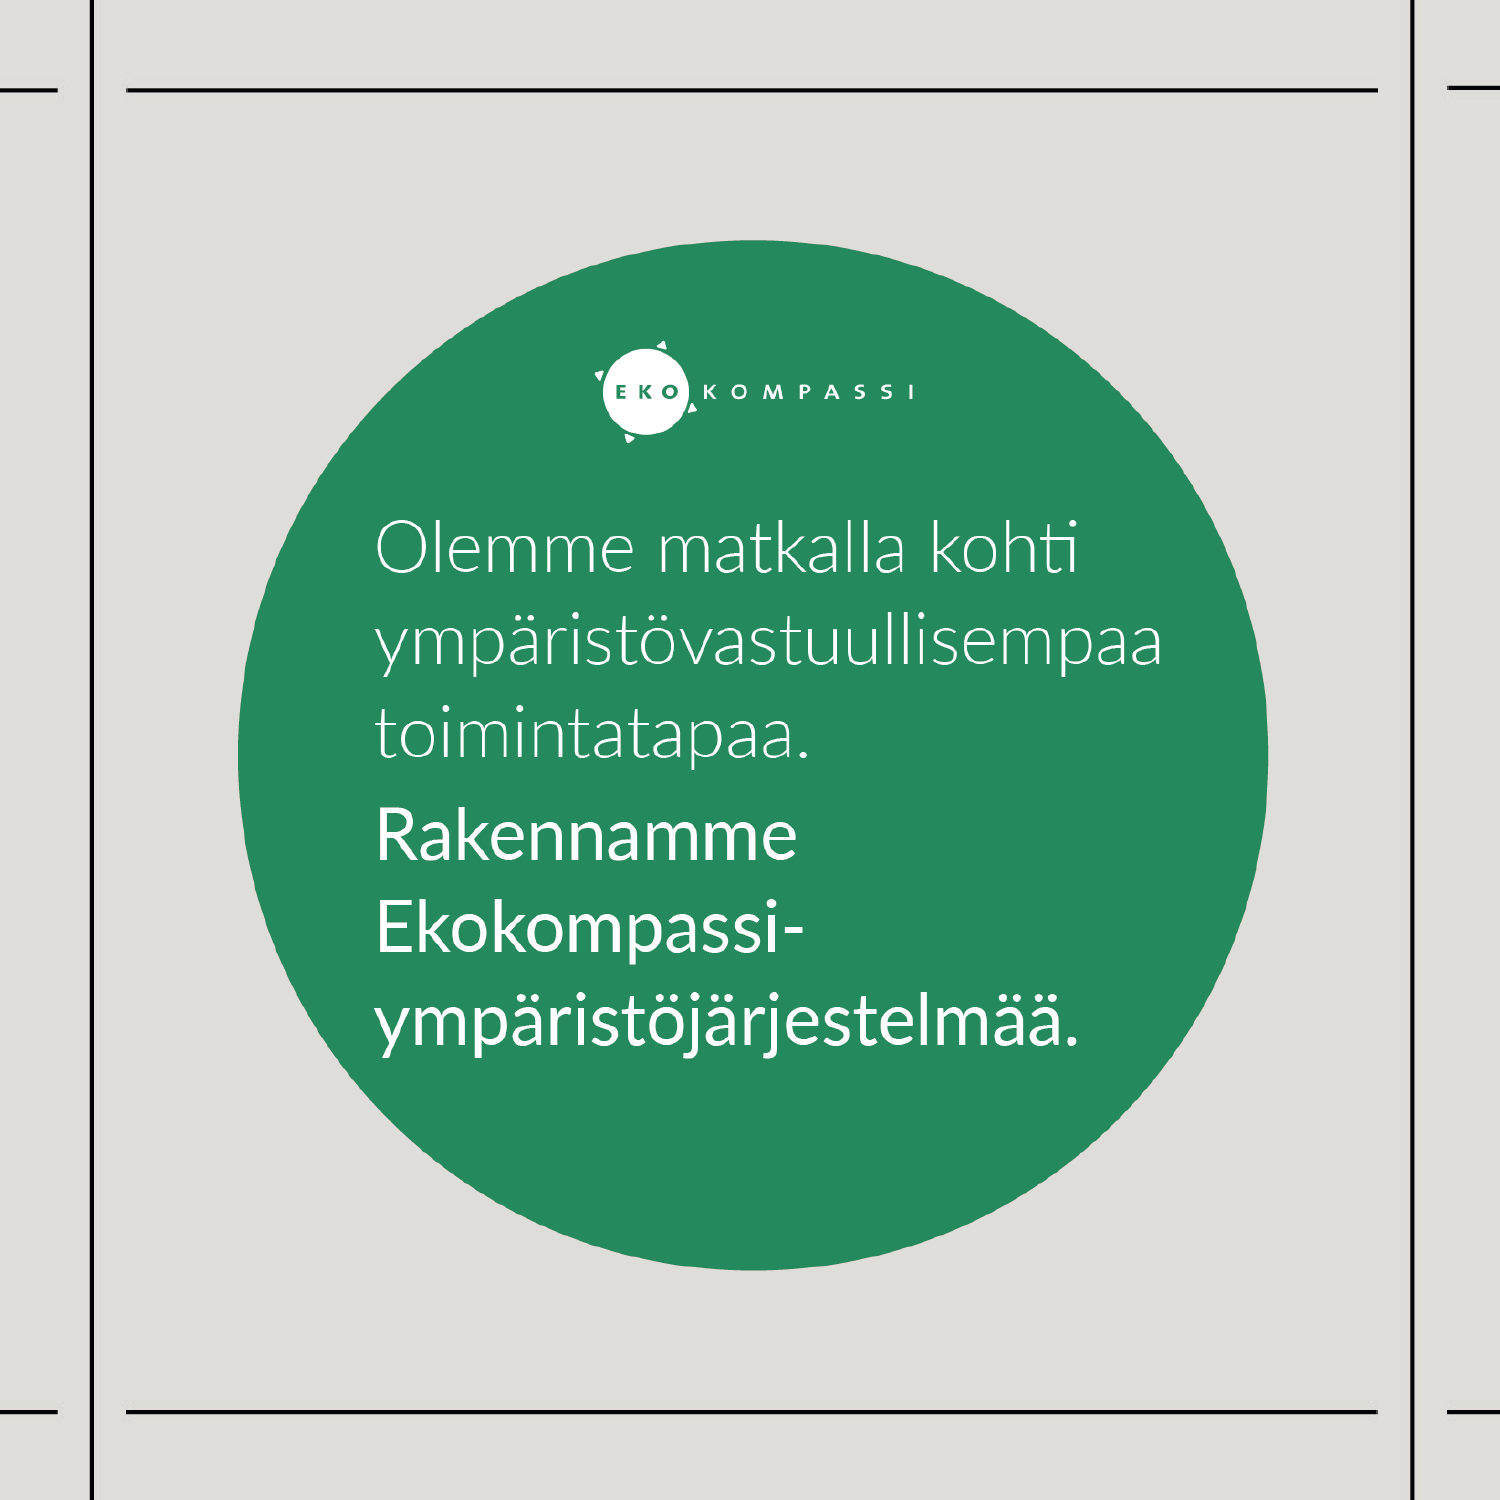 Kuva Ekokompassi logosta. Logo on pyöreä ja vihreä. Logon sisällä lukee valkoisella tekstillä "Olemme matkalla kohti ympäristövastuullisempaa toimintatapaa. Rakennamme Ekokompassi-ympäristöjärjestelmää".